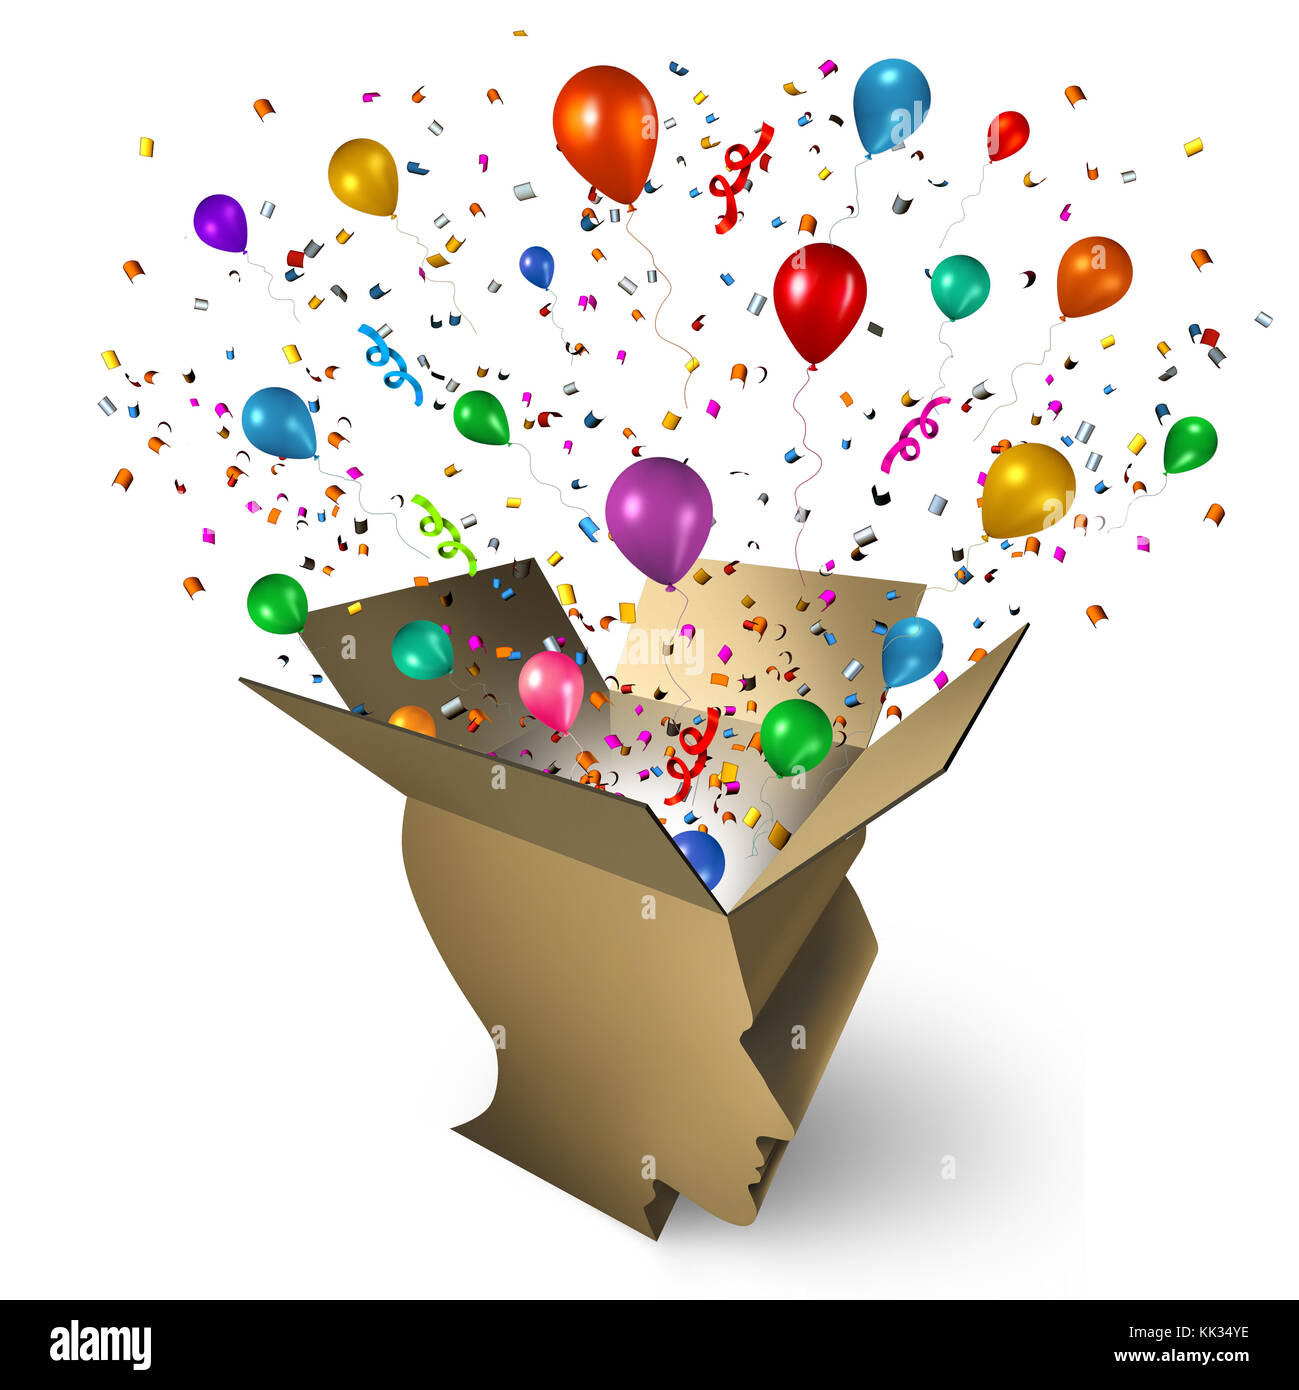 Preissieger und Siegerfeier mit einer Box in Form eines menschlichen Kopfes mit Konfetti und Ballons, die als Festkonzept explodiert. Stockfoto